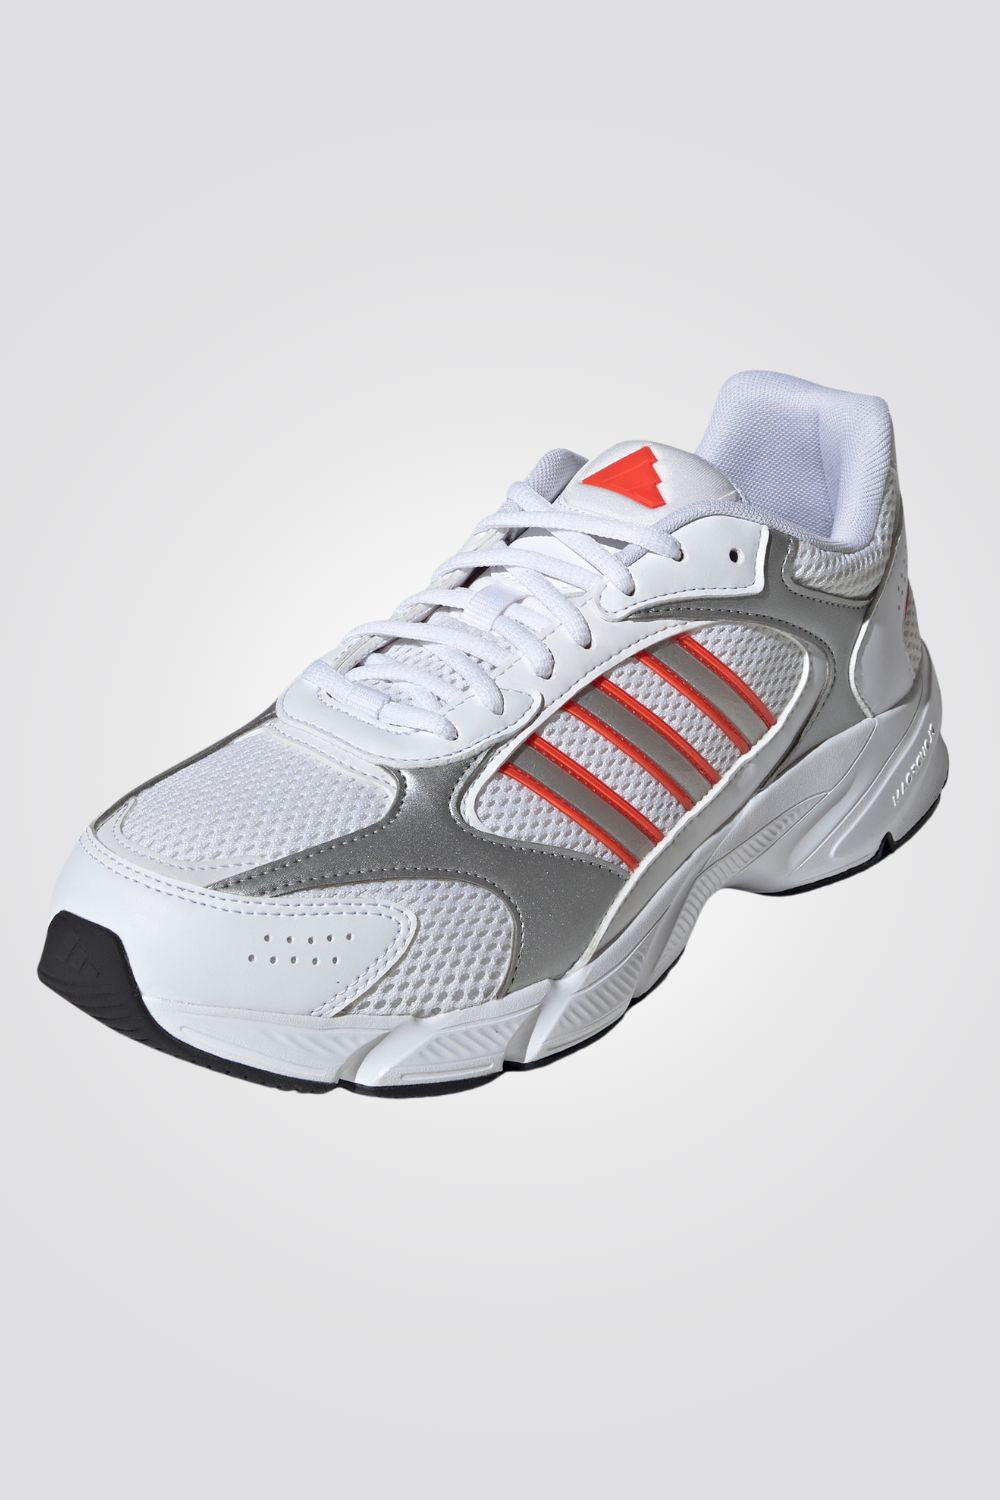 נעלי ספורט לגברים CRAZYCHAOS 2000 בצבע לבן ואפור